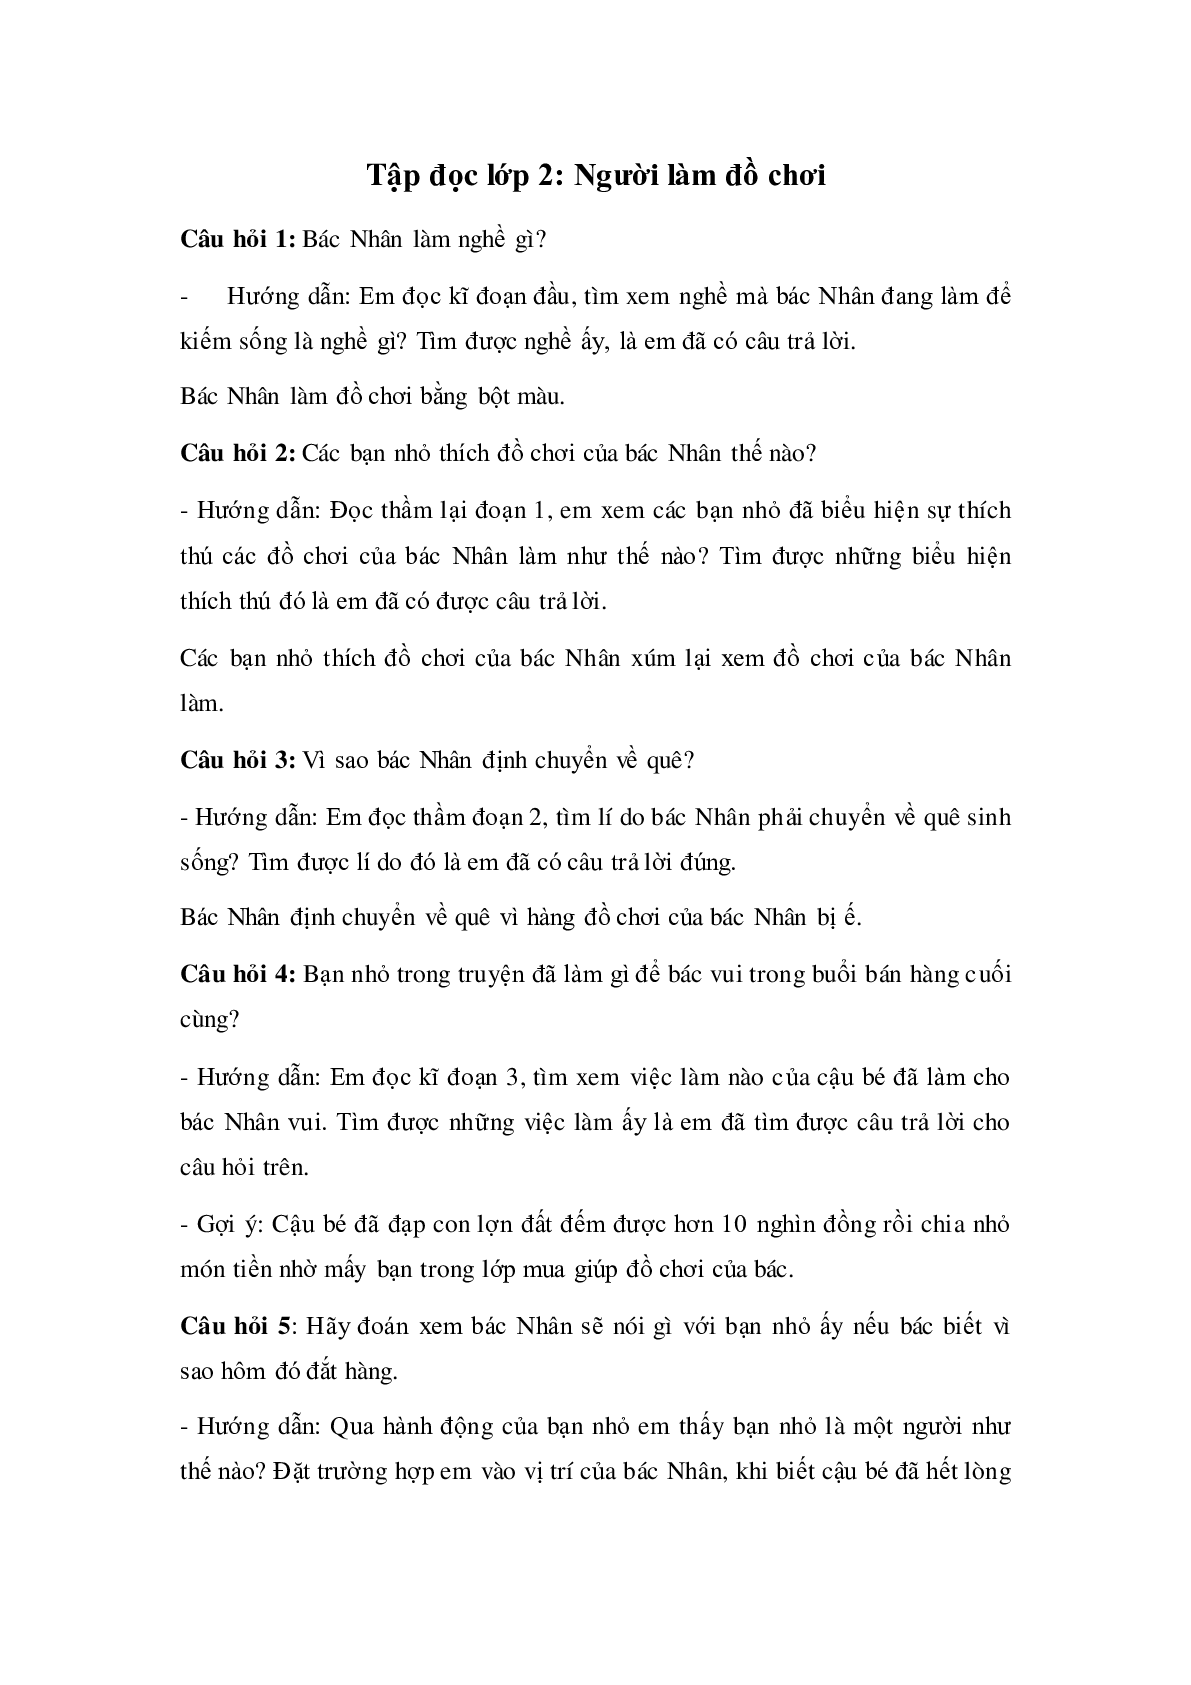 Soạn Tiếng Việt lớp 2: Tập đọc: Người làm đồ chơi mới nhất (trang 1)